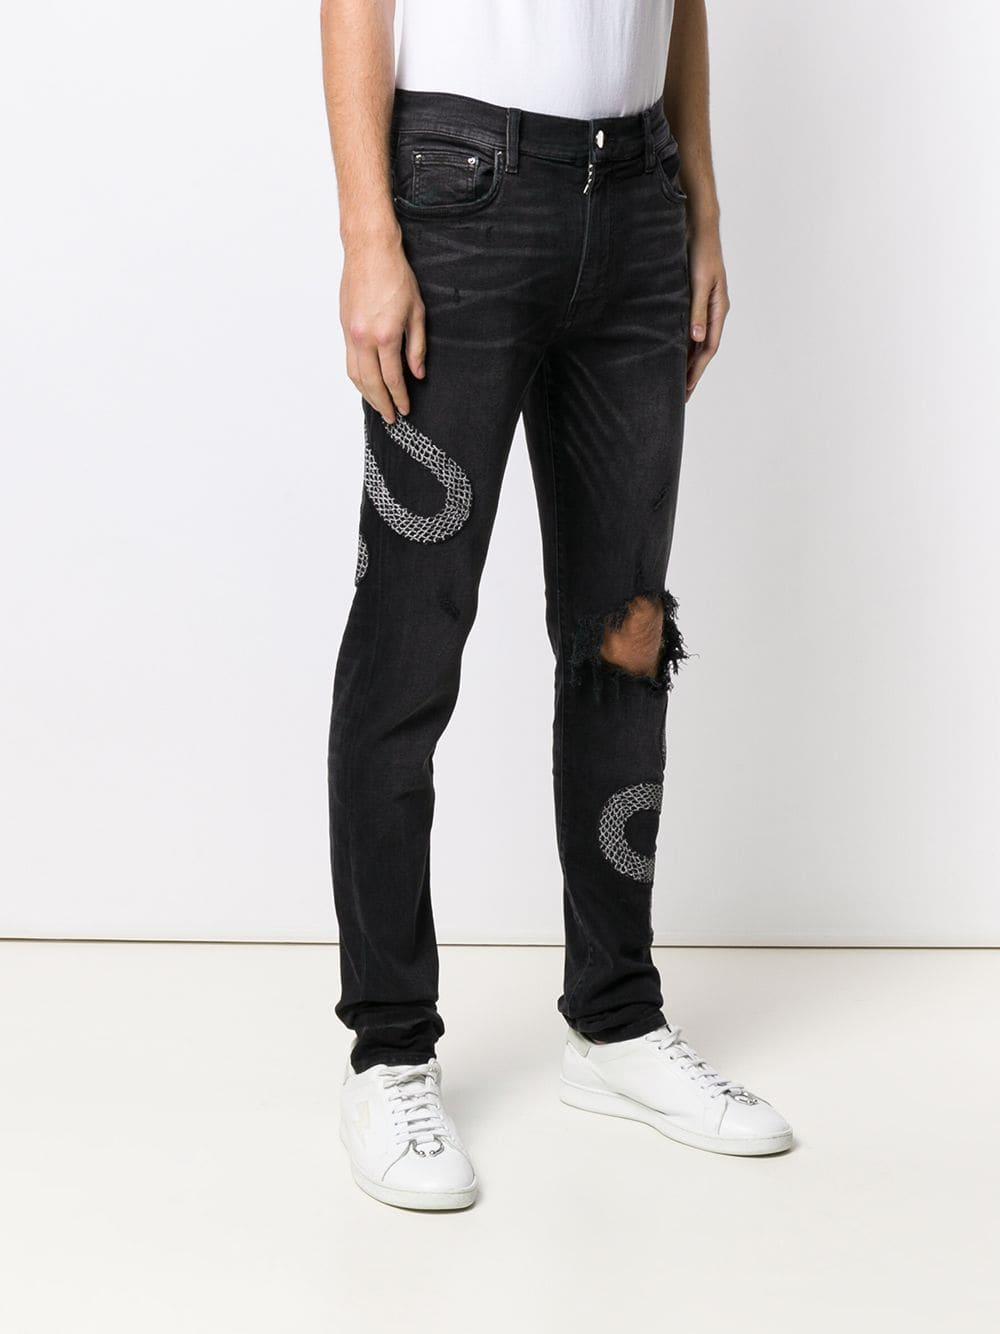 Amiri Denim Snake Pattern Jeans in Black for Men - Lyst